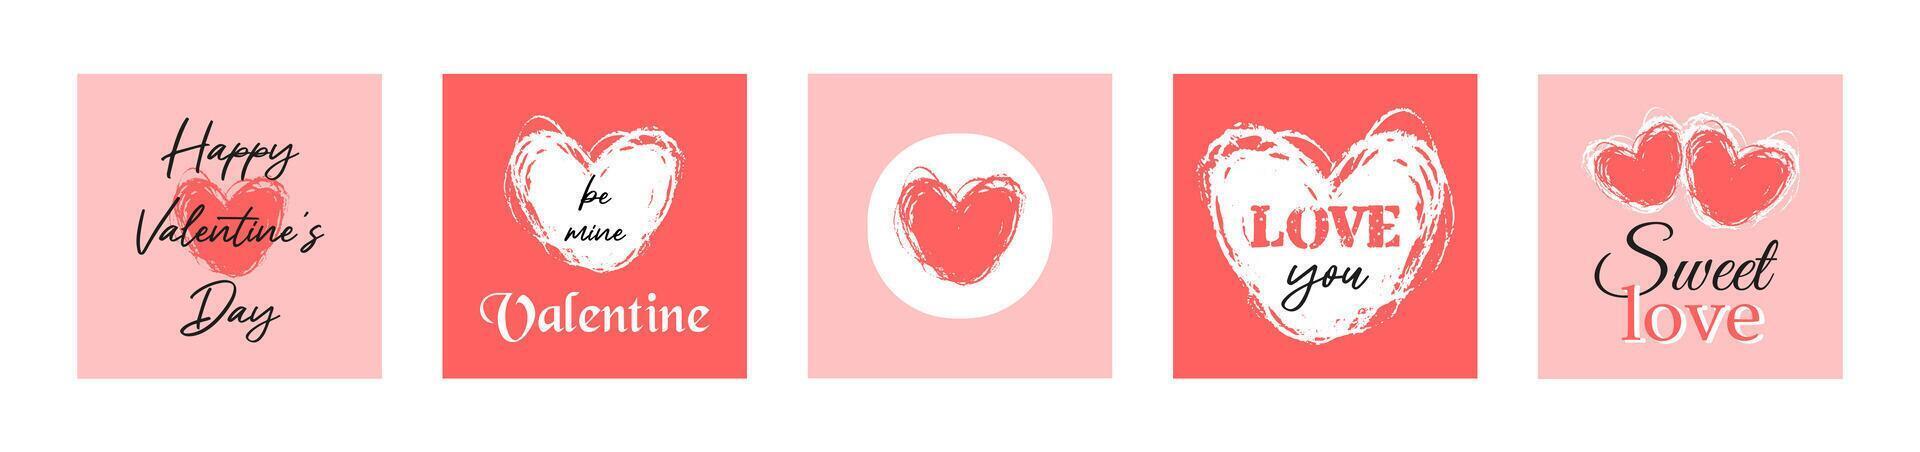 impostato di contento San Valentino giorno carino amore carte con mano disegnato cuore. romantico rosso e bianca design elementi. vettore piatto illustrazioni per manifesti, sociale messaggi, regalo o saluto carte, adesivi.